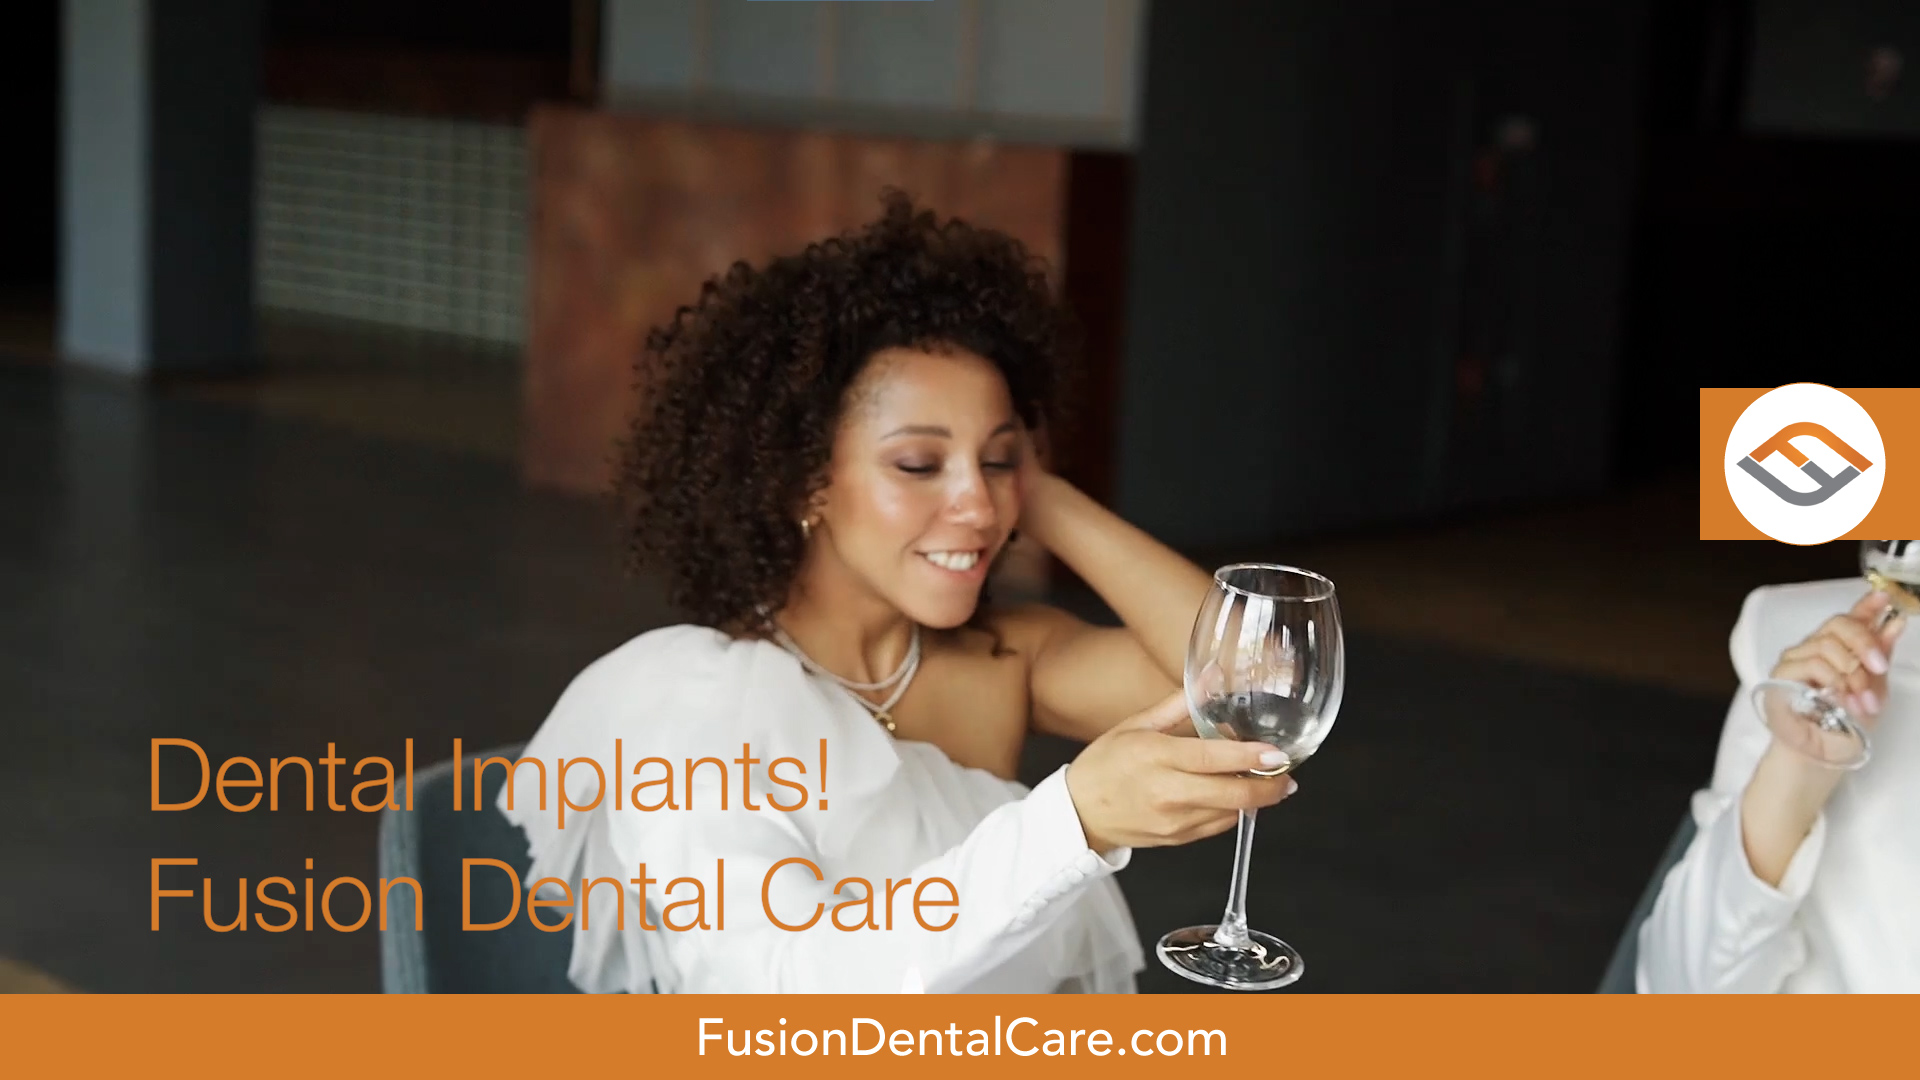 fusion fb dental implants 05.00 00 09 05.still022